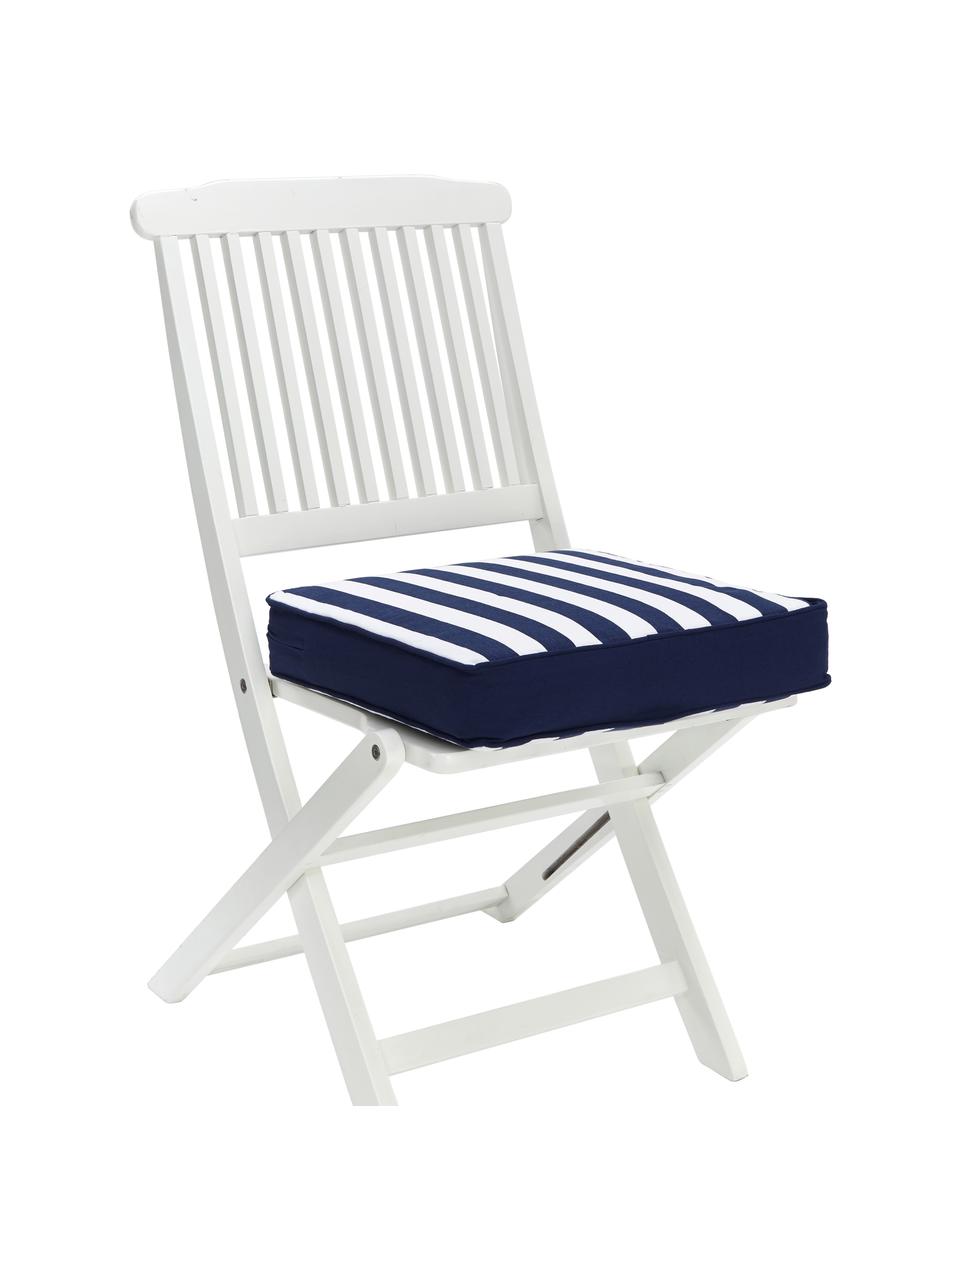 Cuscino sedia alto a righe color blu scuro/bianco Timon, Rivestimento: 100% cotone, Blu, Larg. 40 x Lung. 40 cm